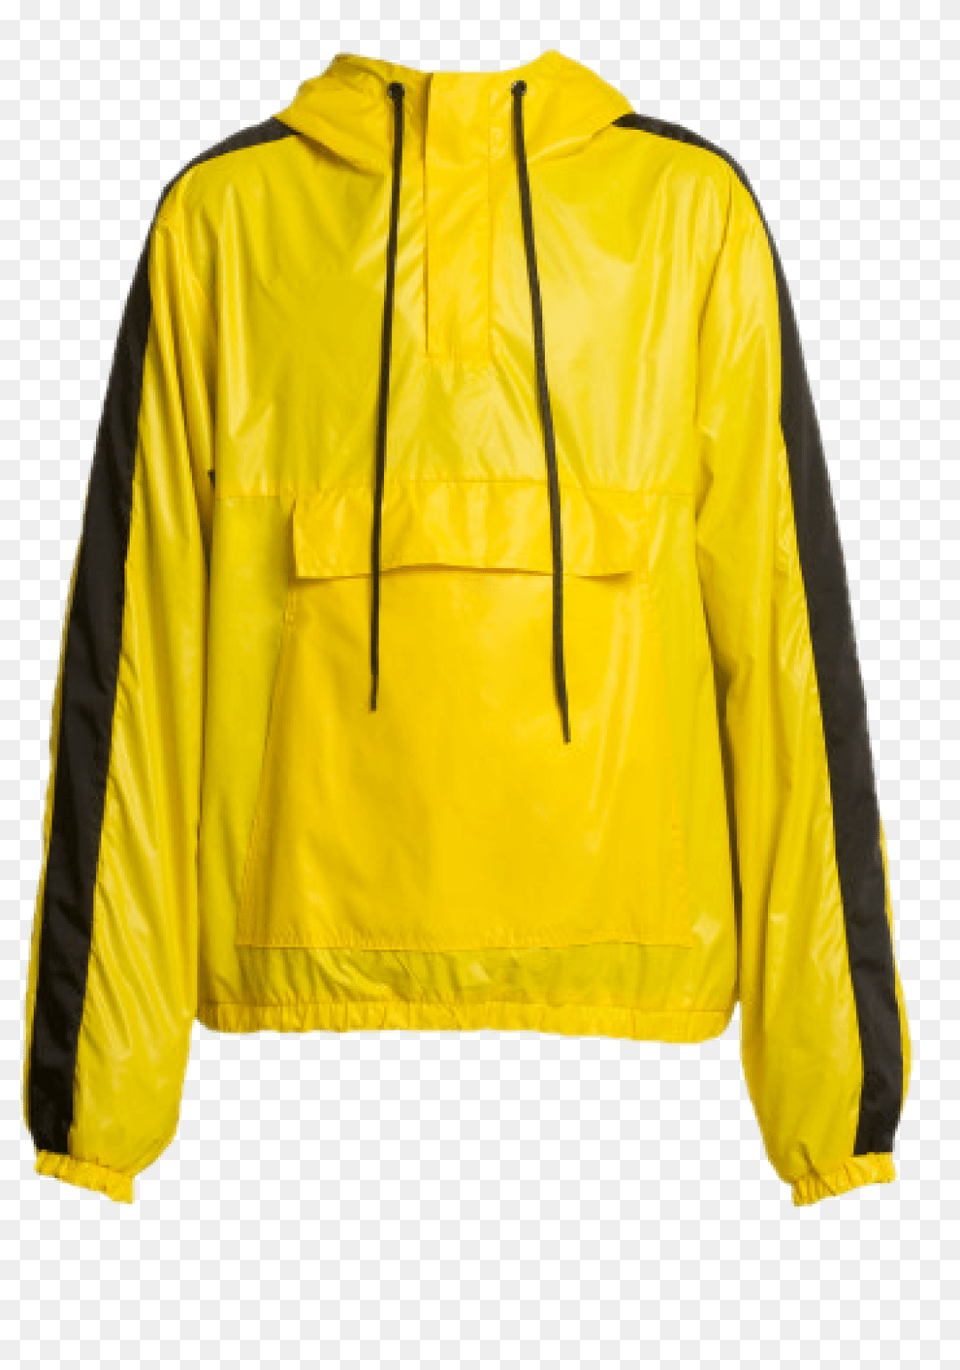 Raincoat, Clothing, Coat, Jacket, Hoodie Free Png